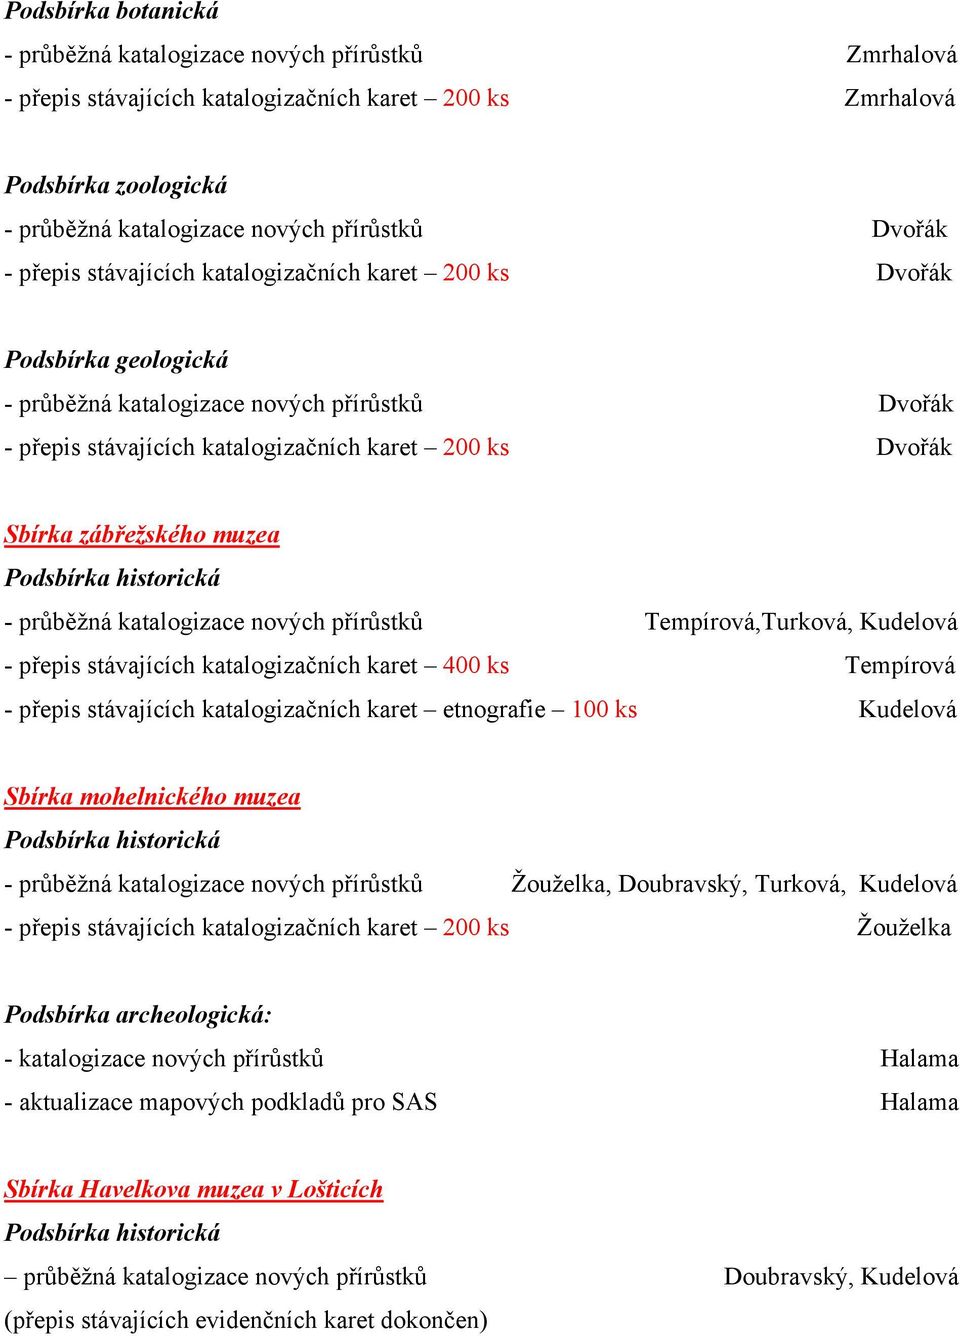 zábřežského muzea - průběžná katalogizace nových přírůstků Tempírová,Turková, Kudelová - přepis stávajících katalogizačních karet 400 ks Tempírová - přepis stávajících katalogizačních karet